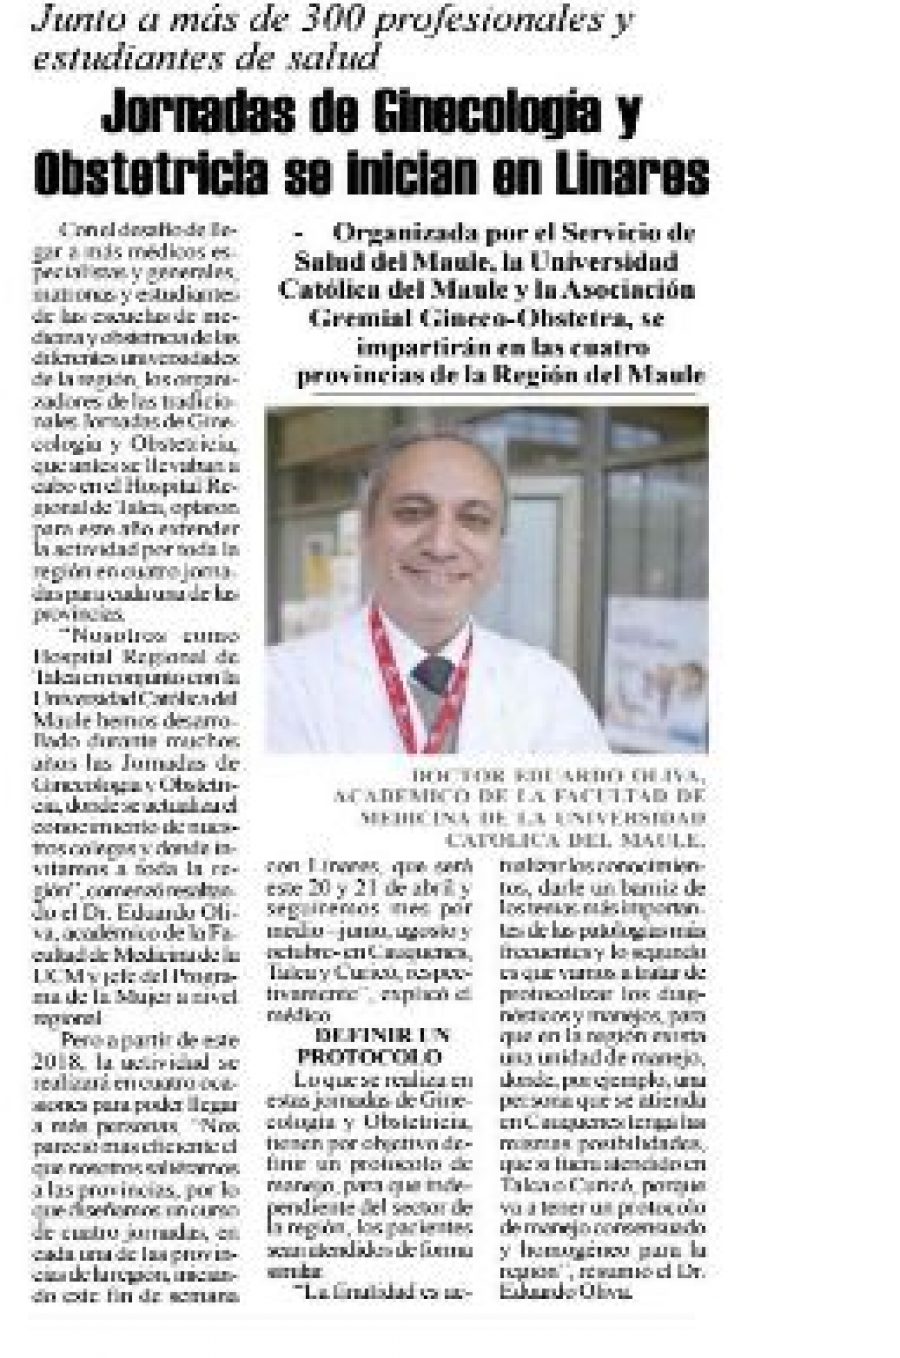 20 de abril en Diario El Heraldo: “Jornadas de Ginecología y Obstetricia se inician en Linares”